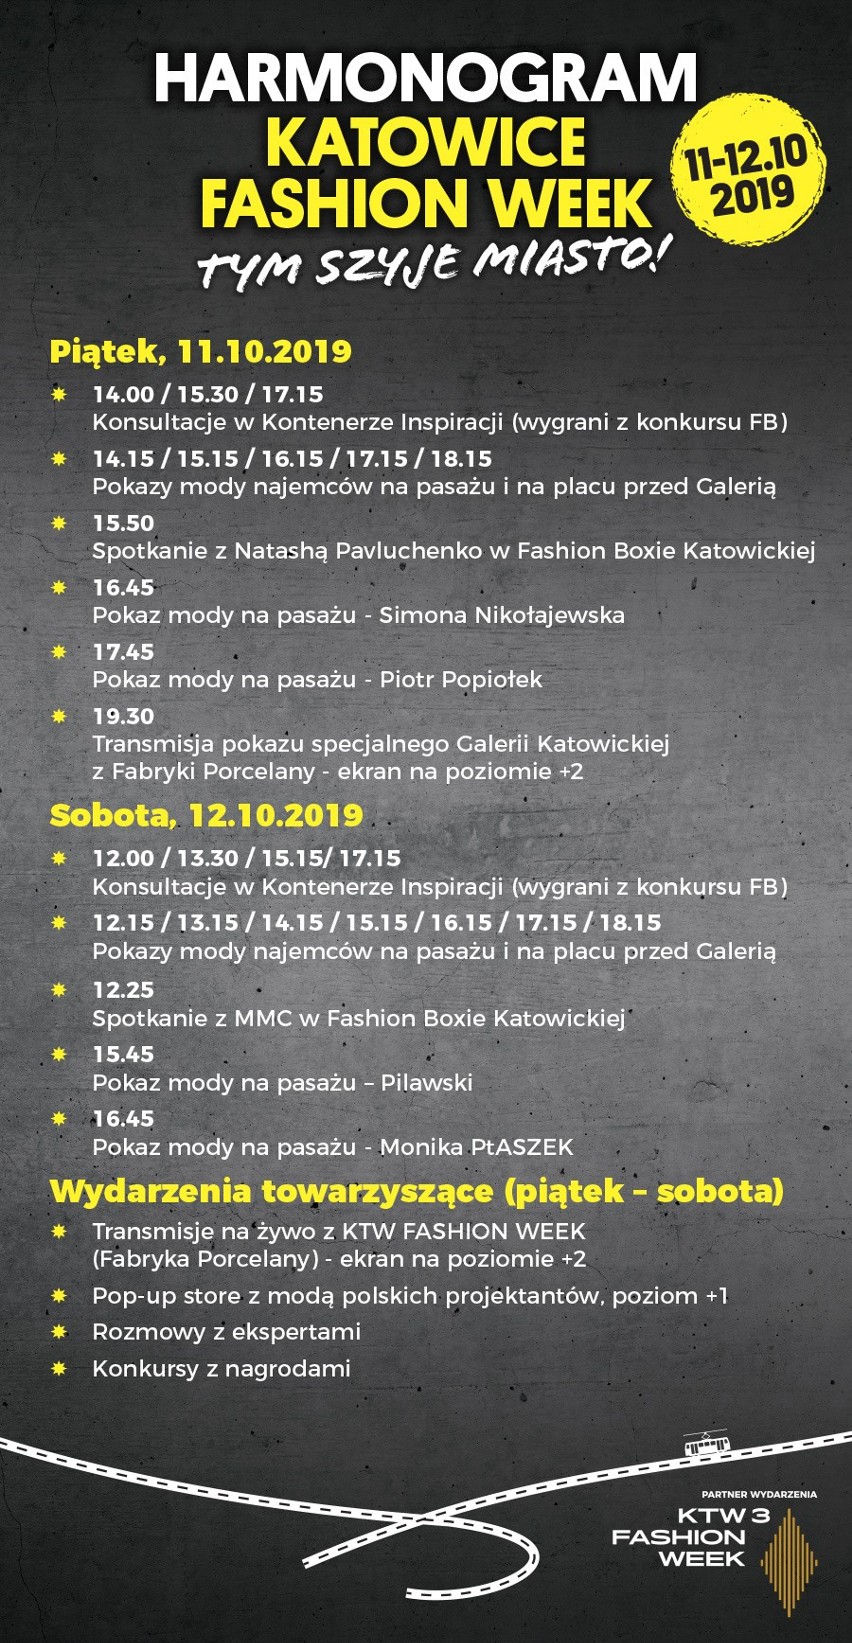 Harmonogram Katowice Fashion Week 2019